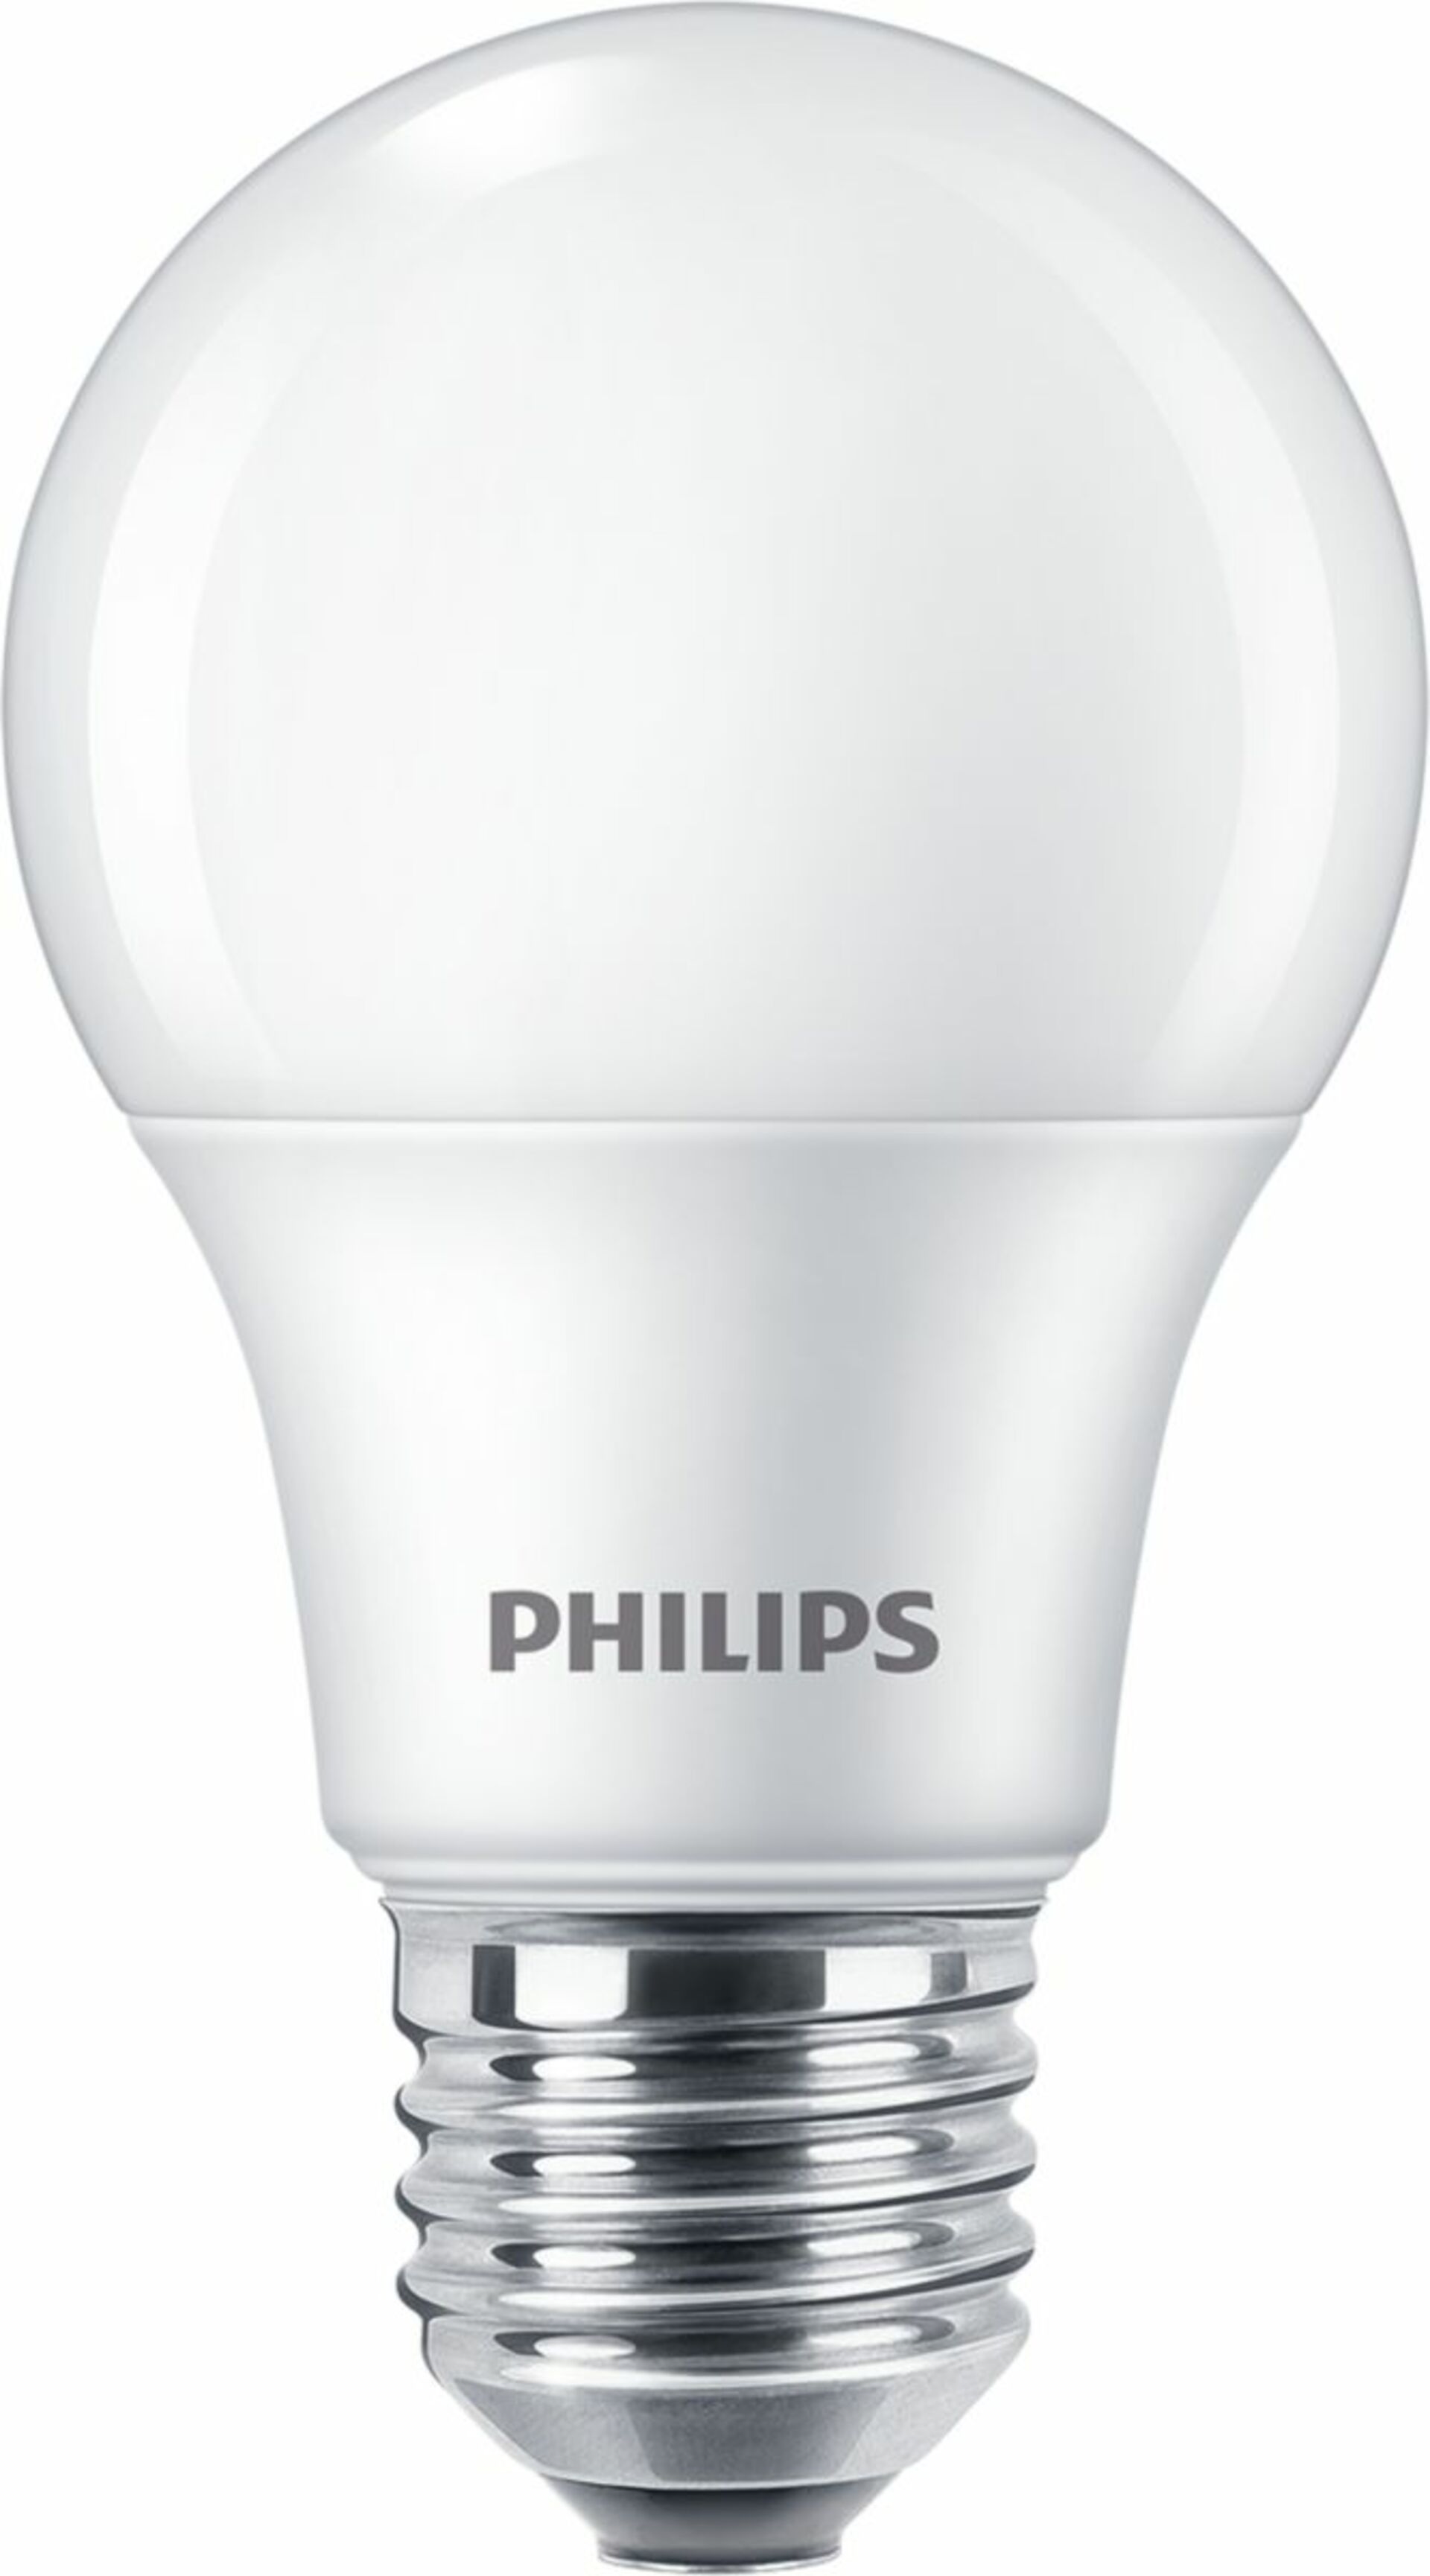 Philips CorePro LEDBulb ND 8-60W A60 E27 840